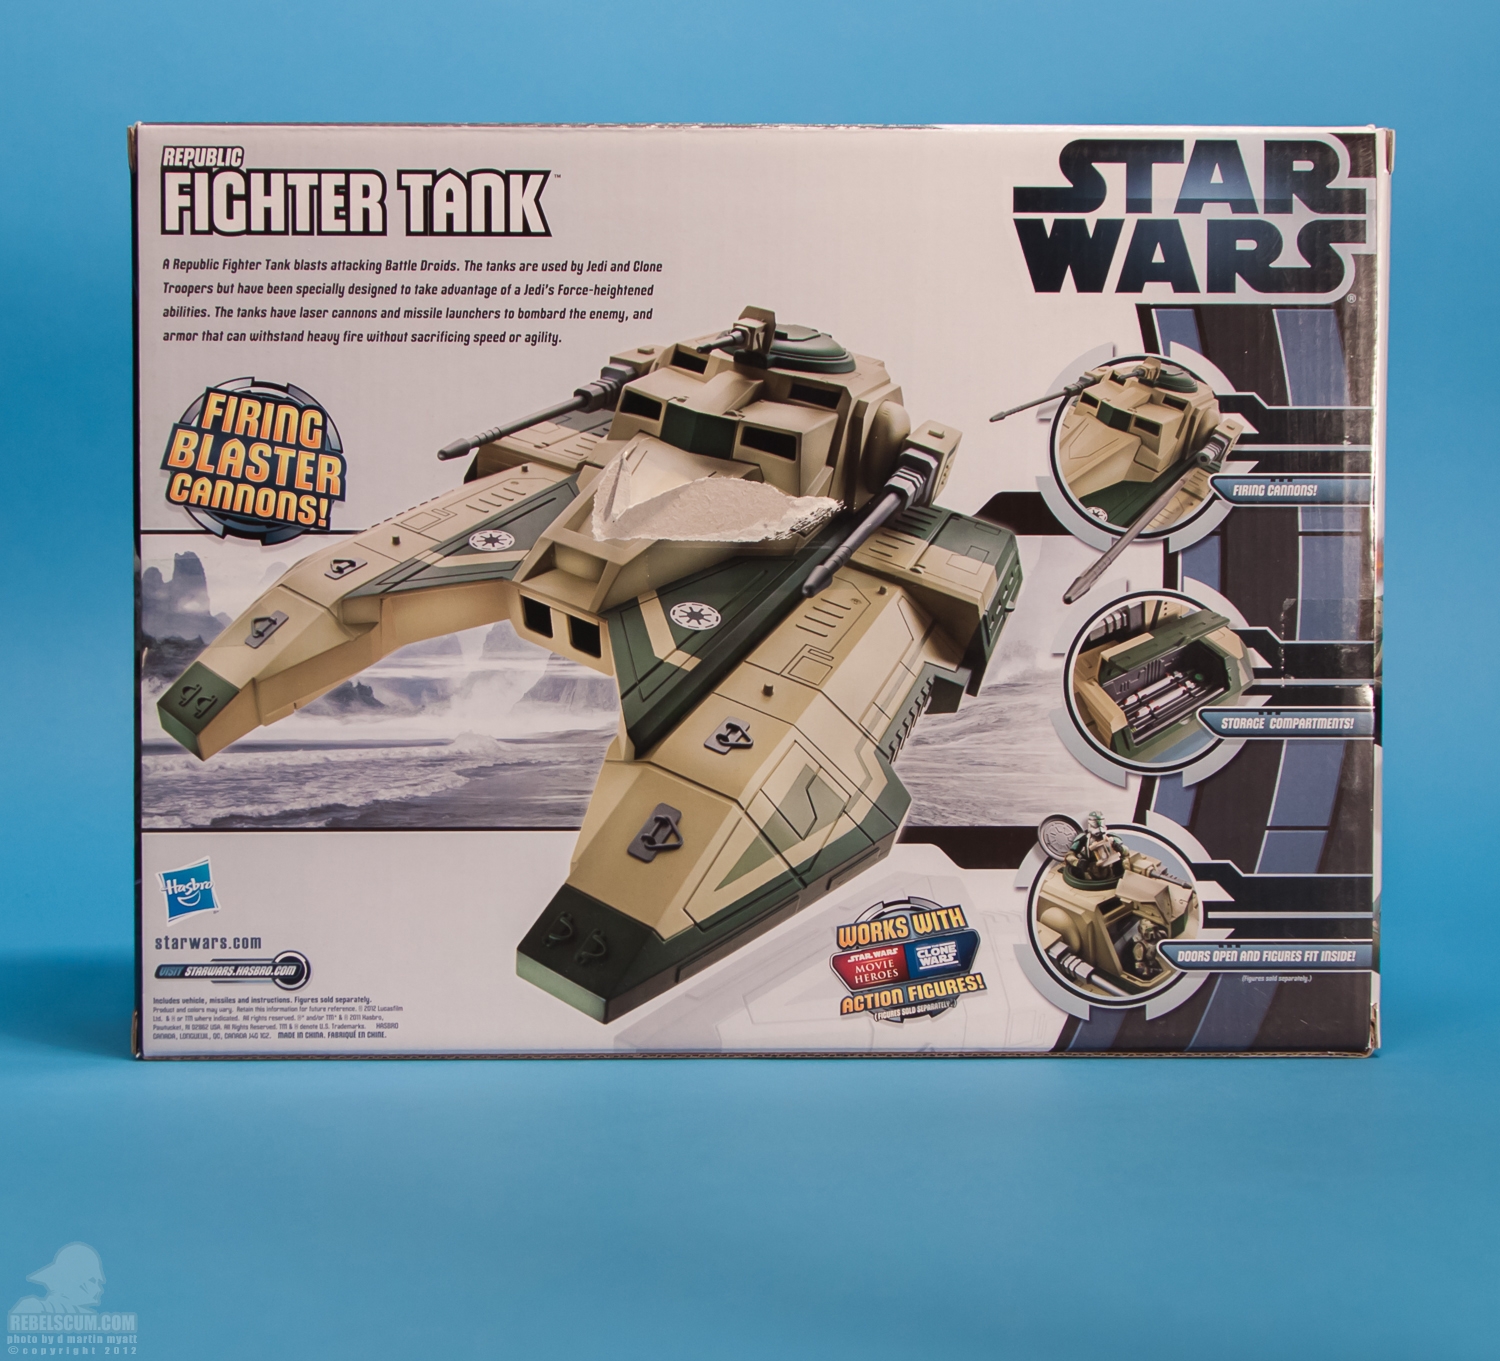 Republic_Fighter_Tank_Movie_Heroes_Star_Wars_Vehicle_Hasbro-19.jpg